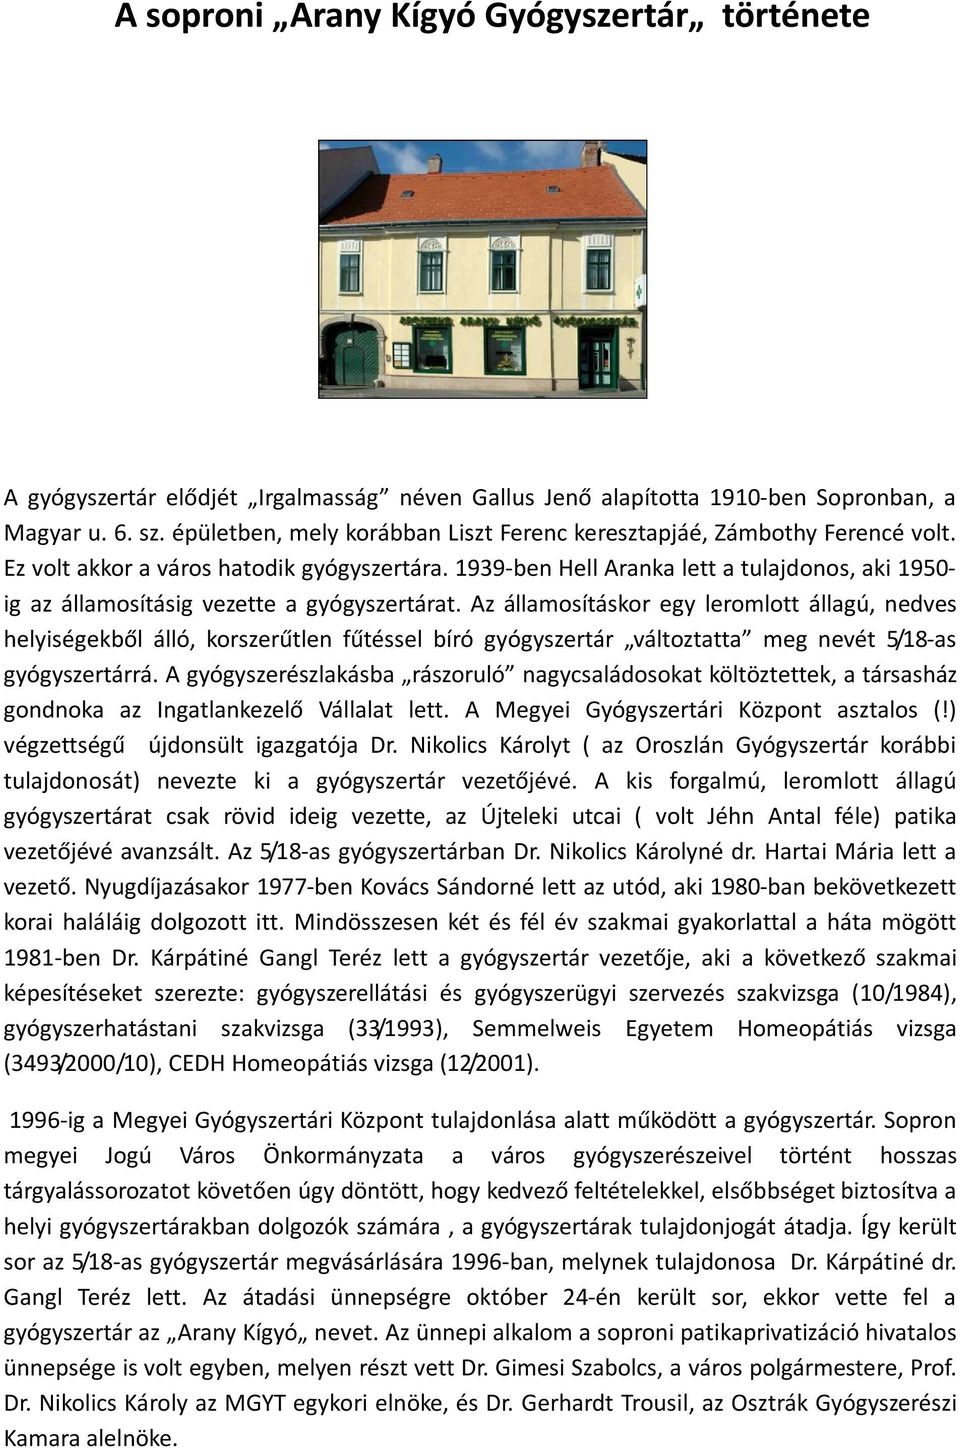 A soproni Arany Kígyó Gyógyszertár története - PDF Free Download